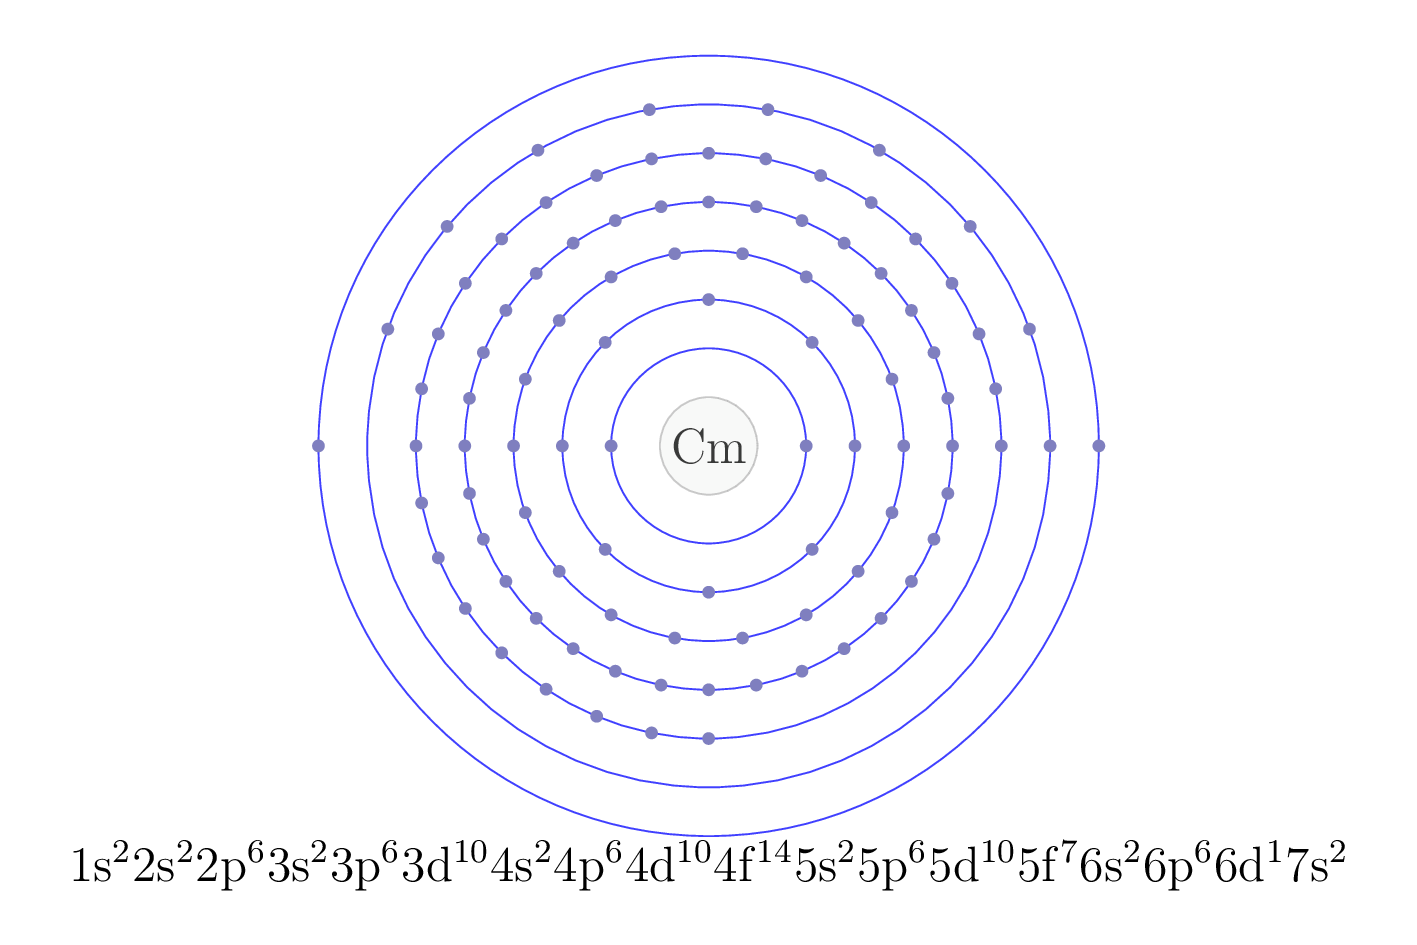 electron configuration of element Cm